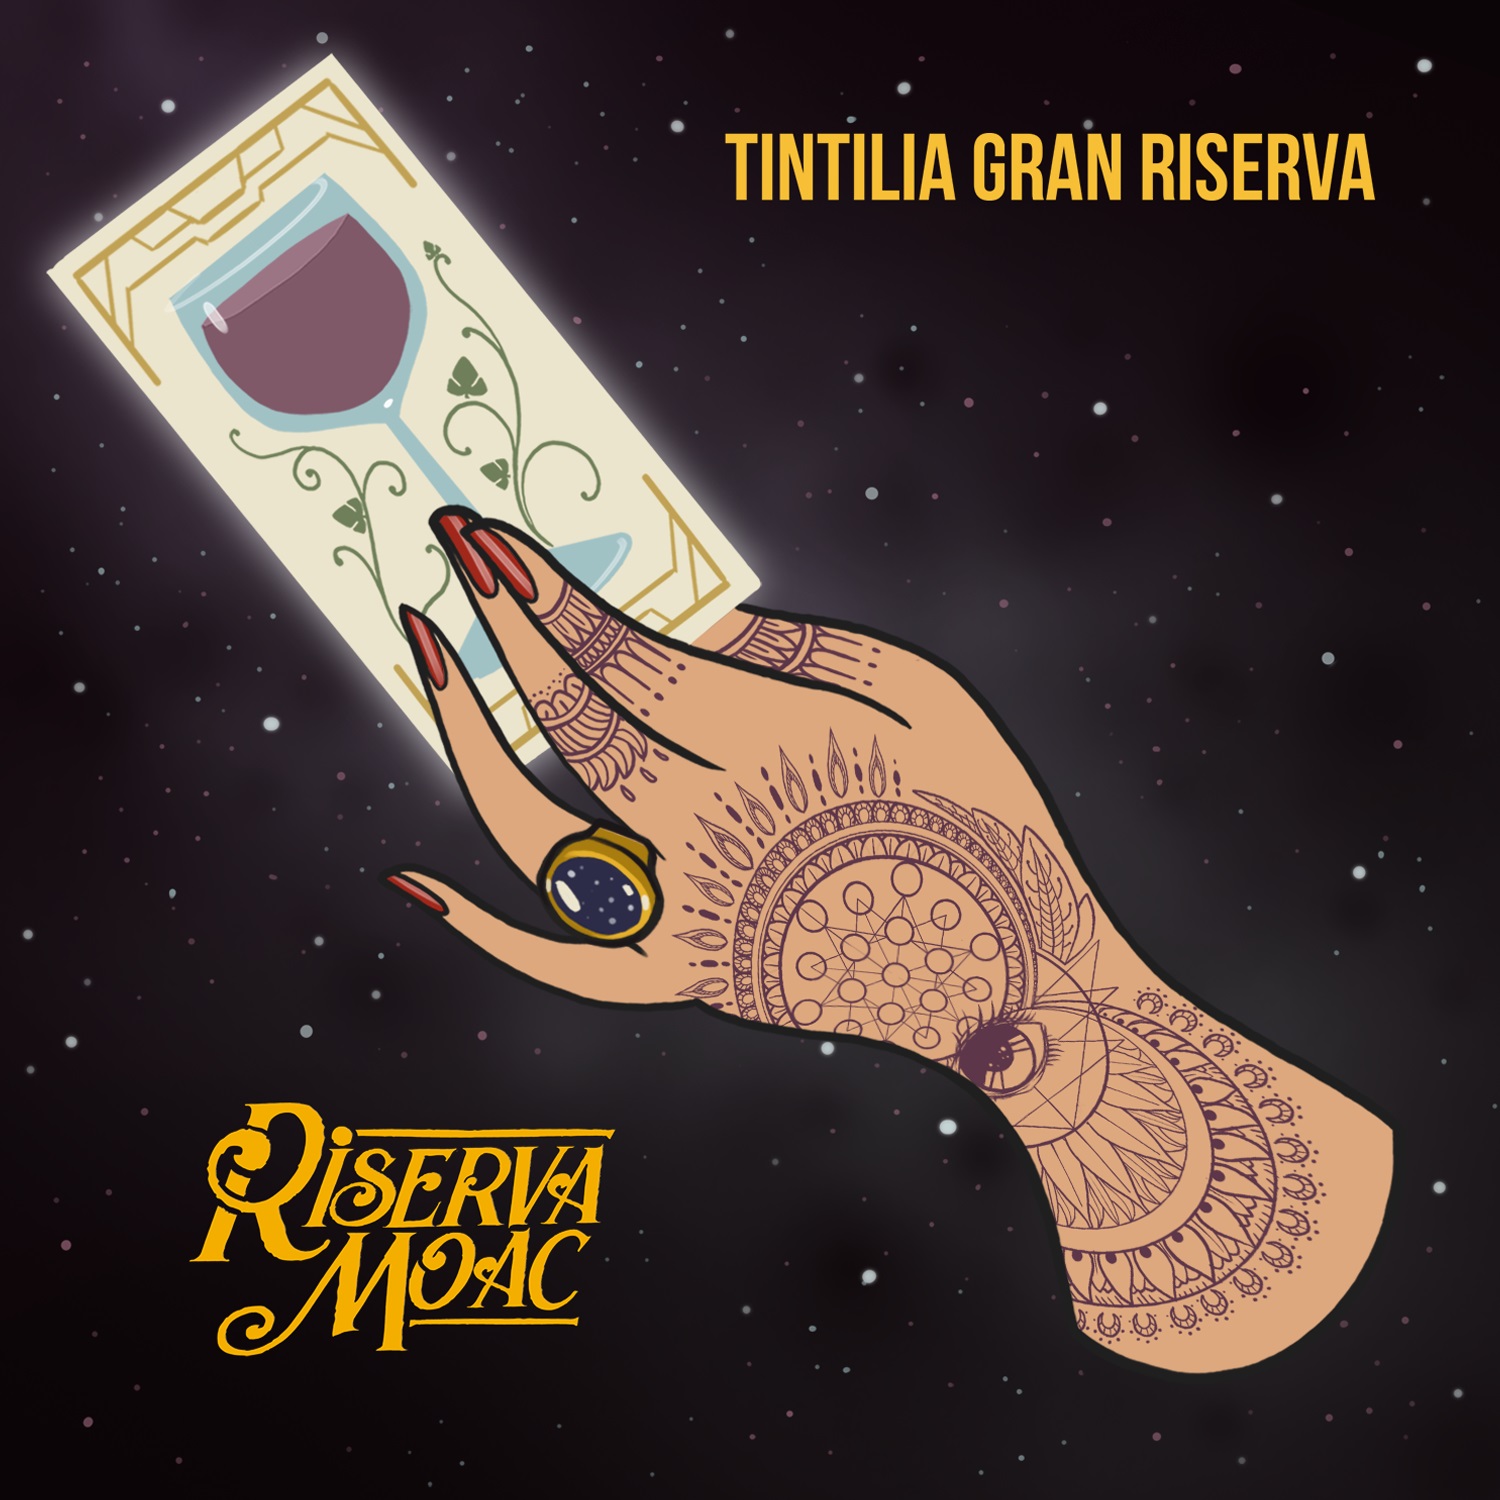 Riserva Moac – Festa della Birra, Tolentino (IT)